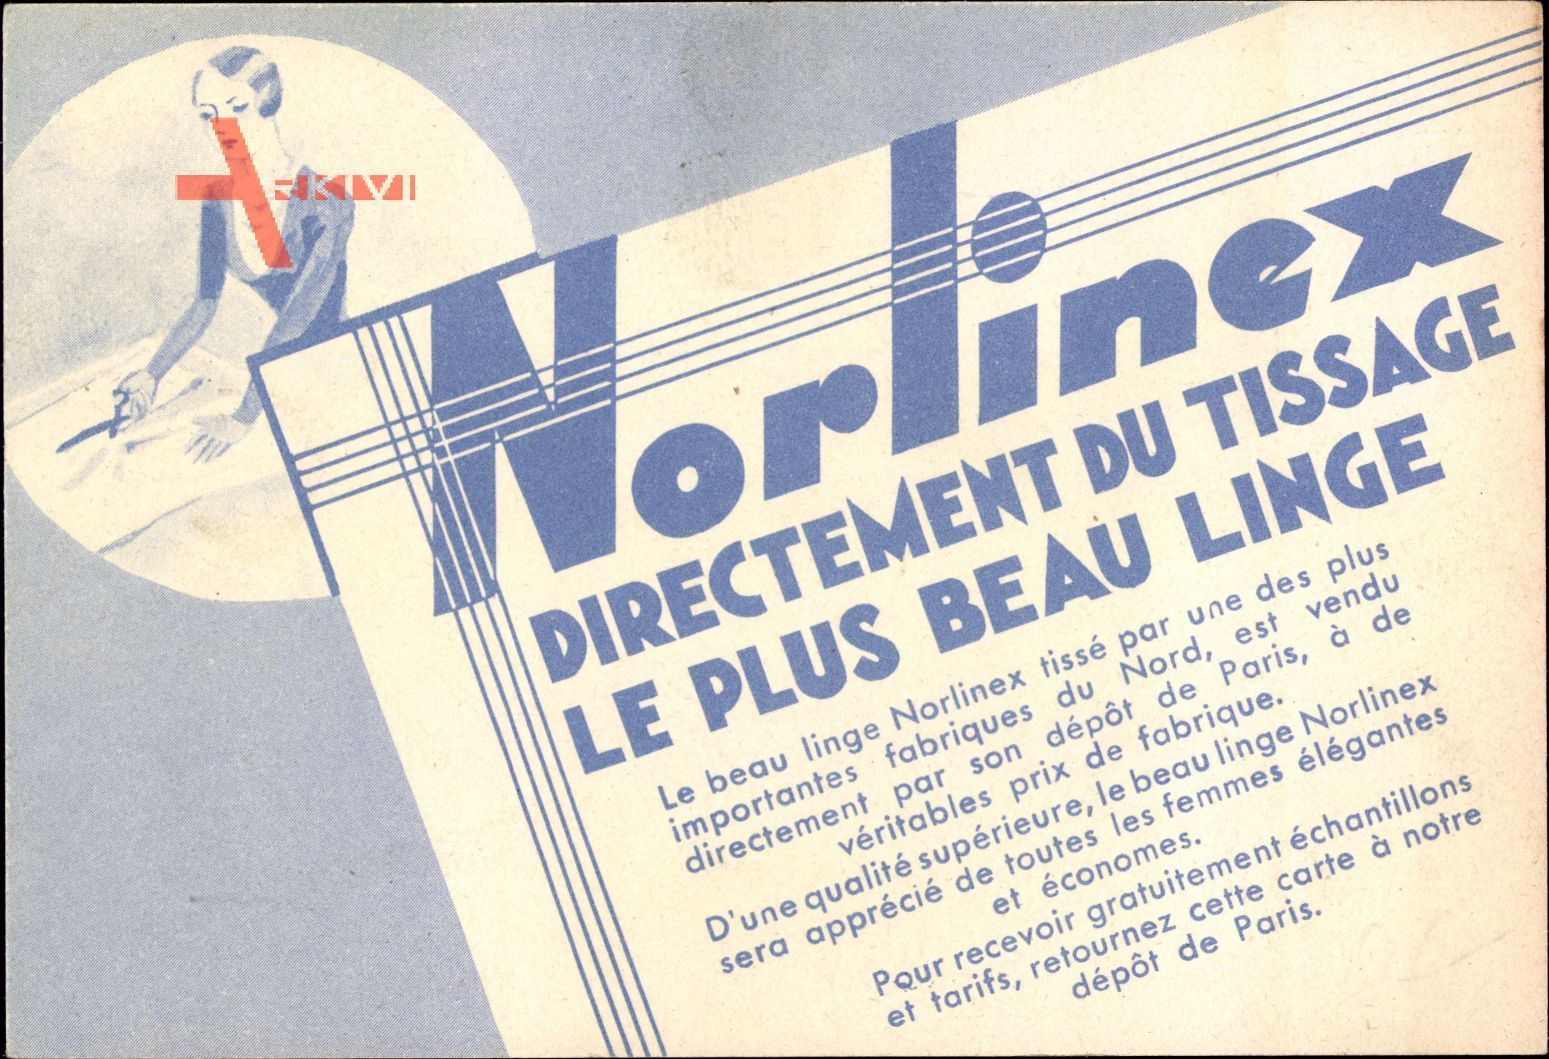 Norlinesx, Directement du Tissage, le Plus Beau Linge, Reklame,